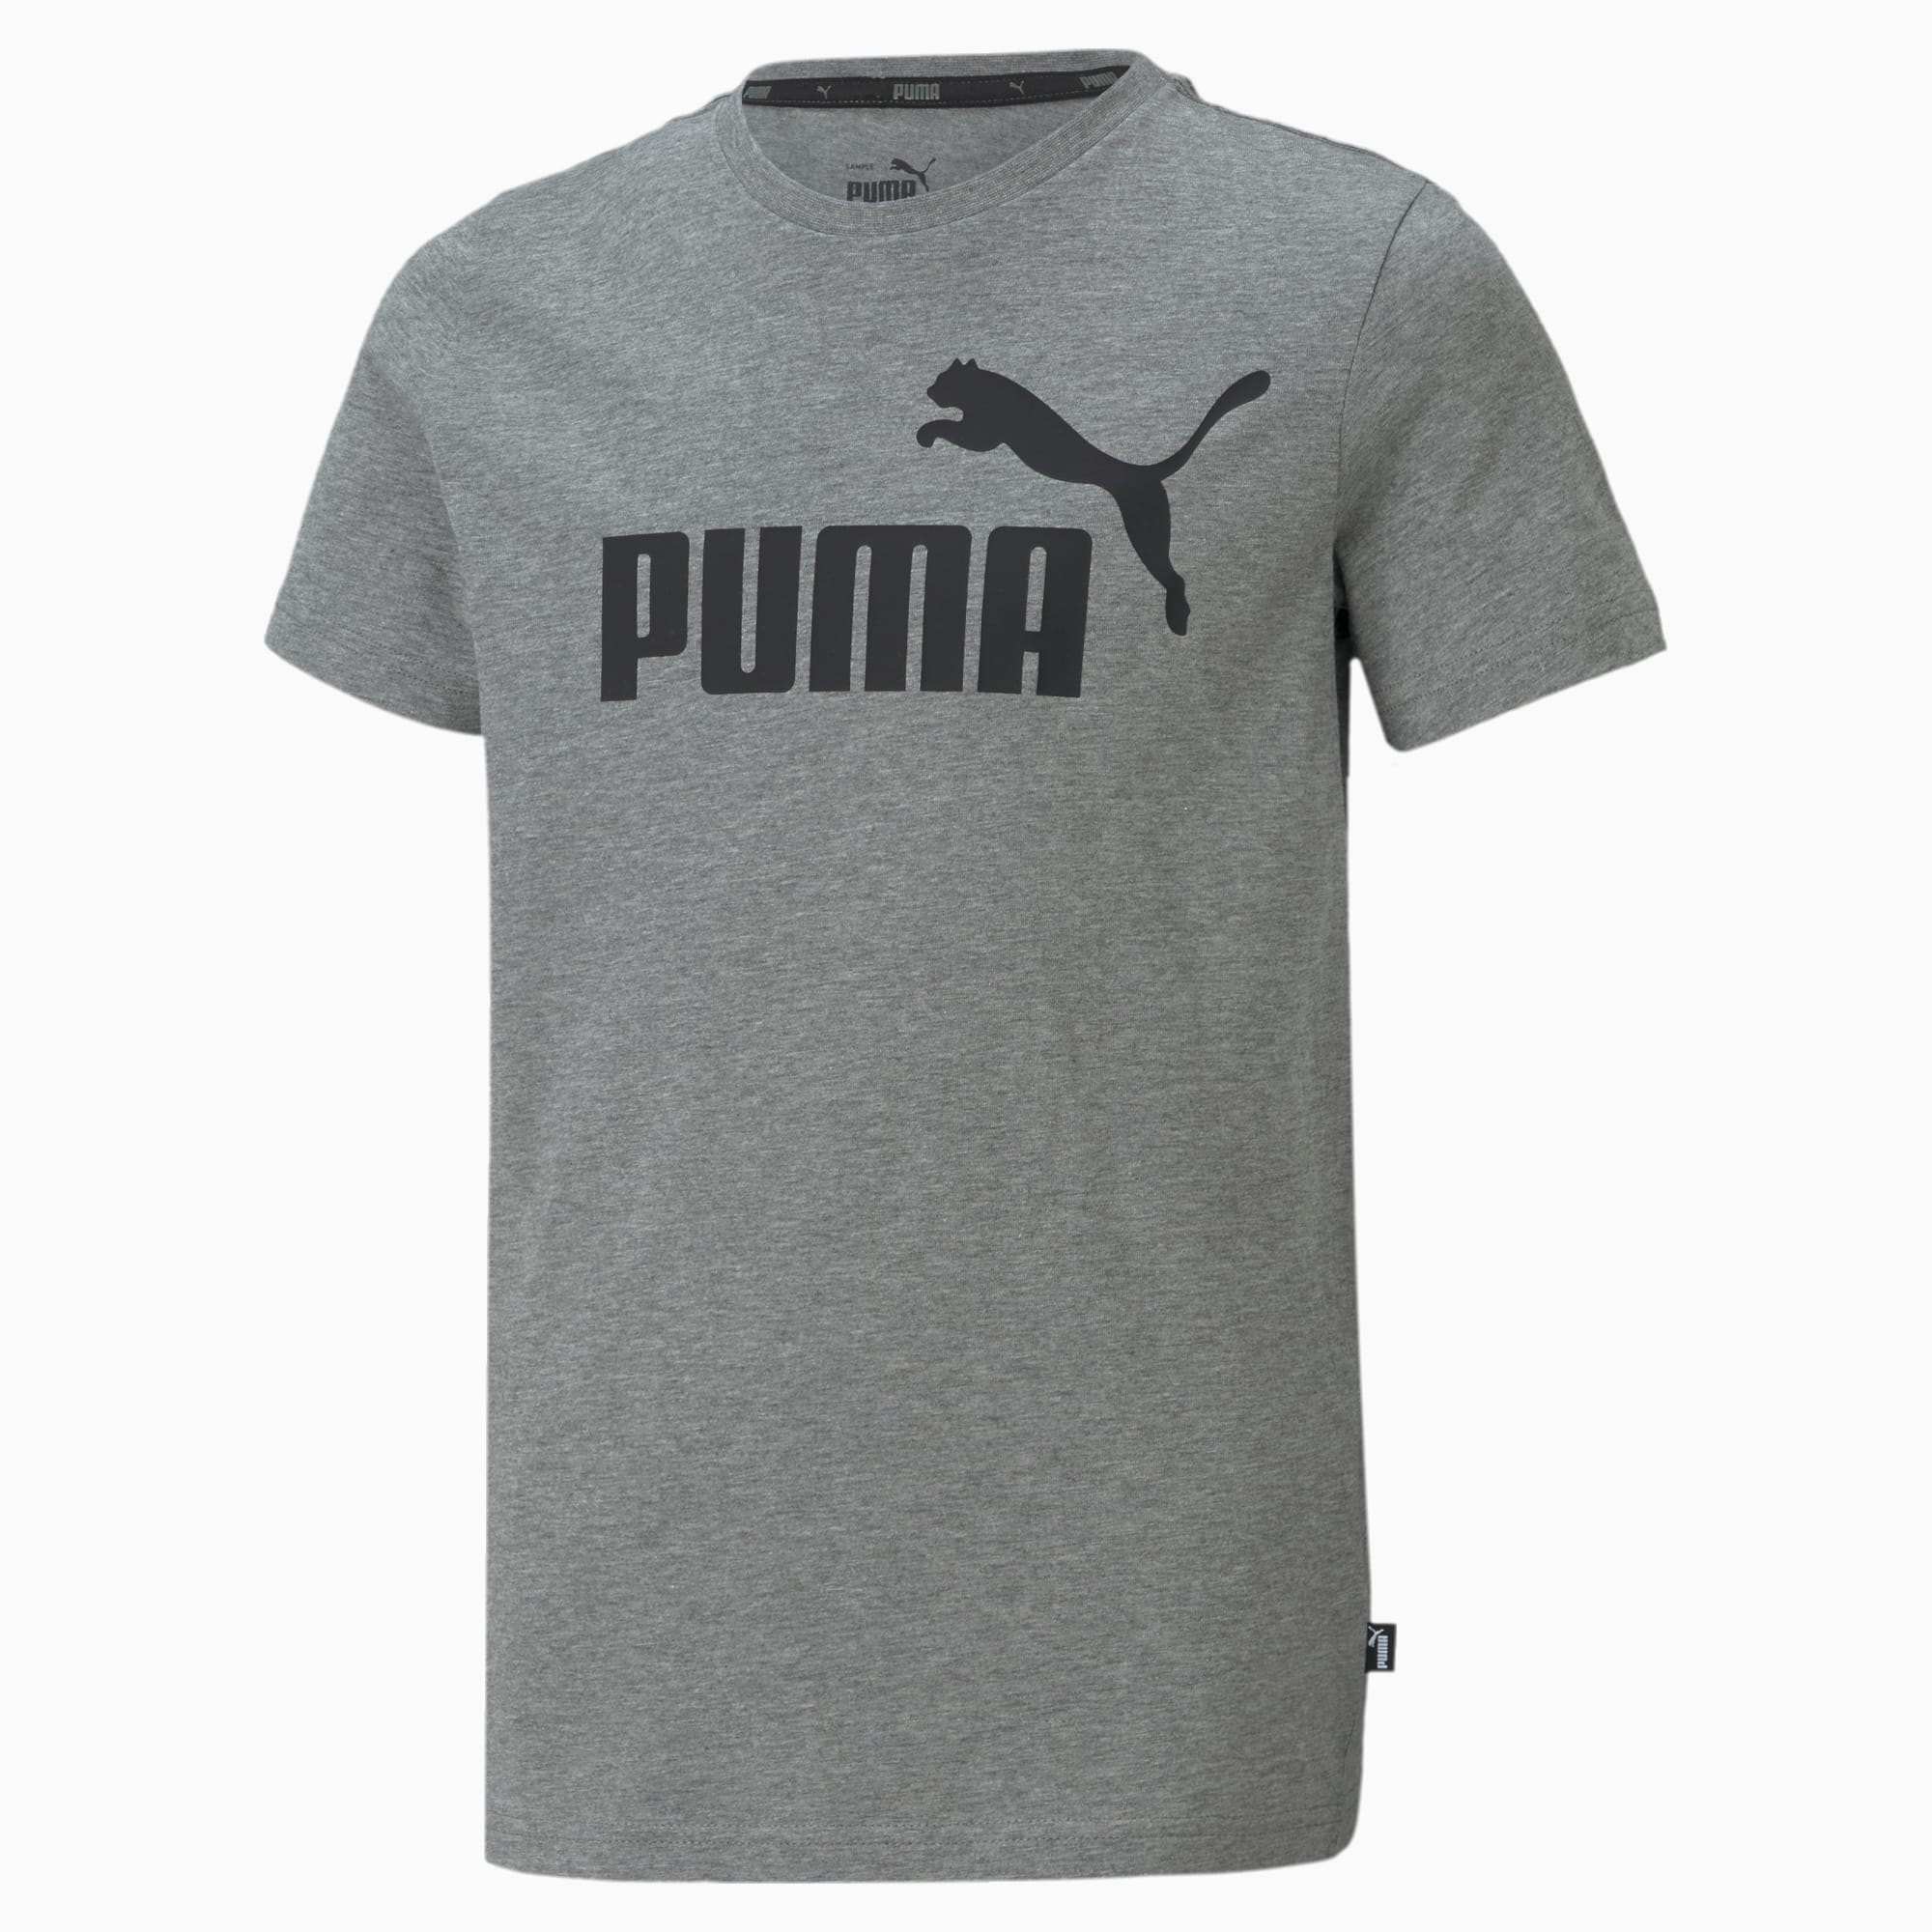 PUMA Essentials Logo Youth T-Shirt, Medium Grey Heather, Size 92, Clothing